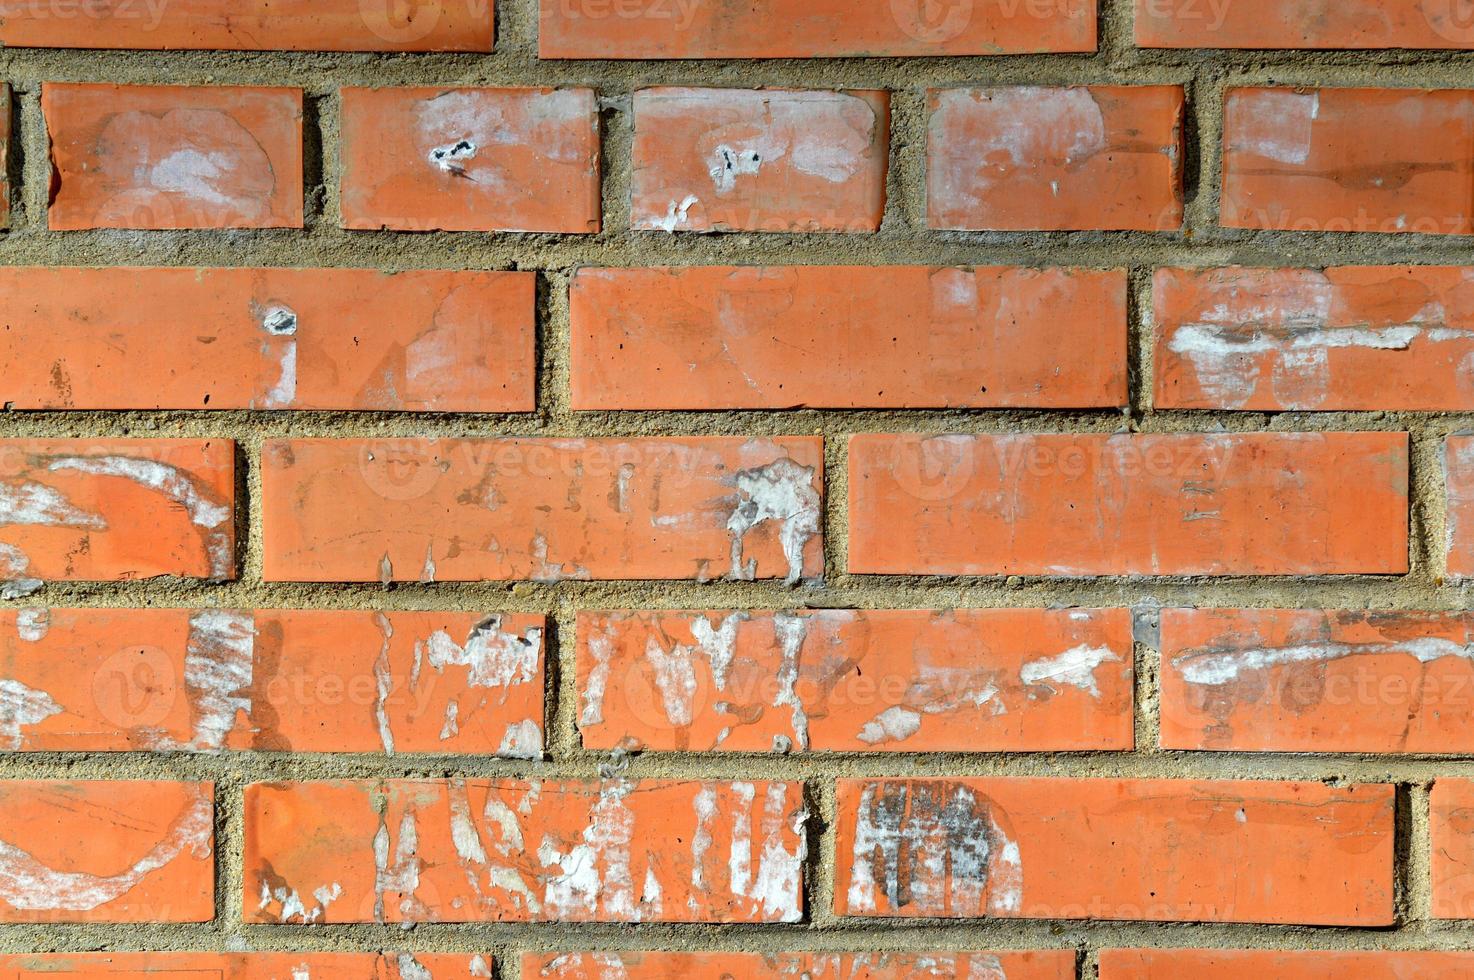 gammal orange tegelvägg. målad sliten väggyta. vintage röd tegelvägg med tecken på gamla annonser på den. urban fotobakgrund för design. byggnadsfasad med skadad puts foto